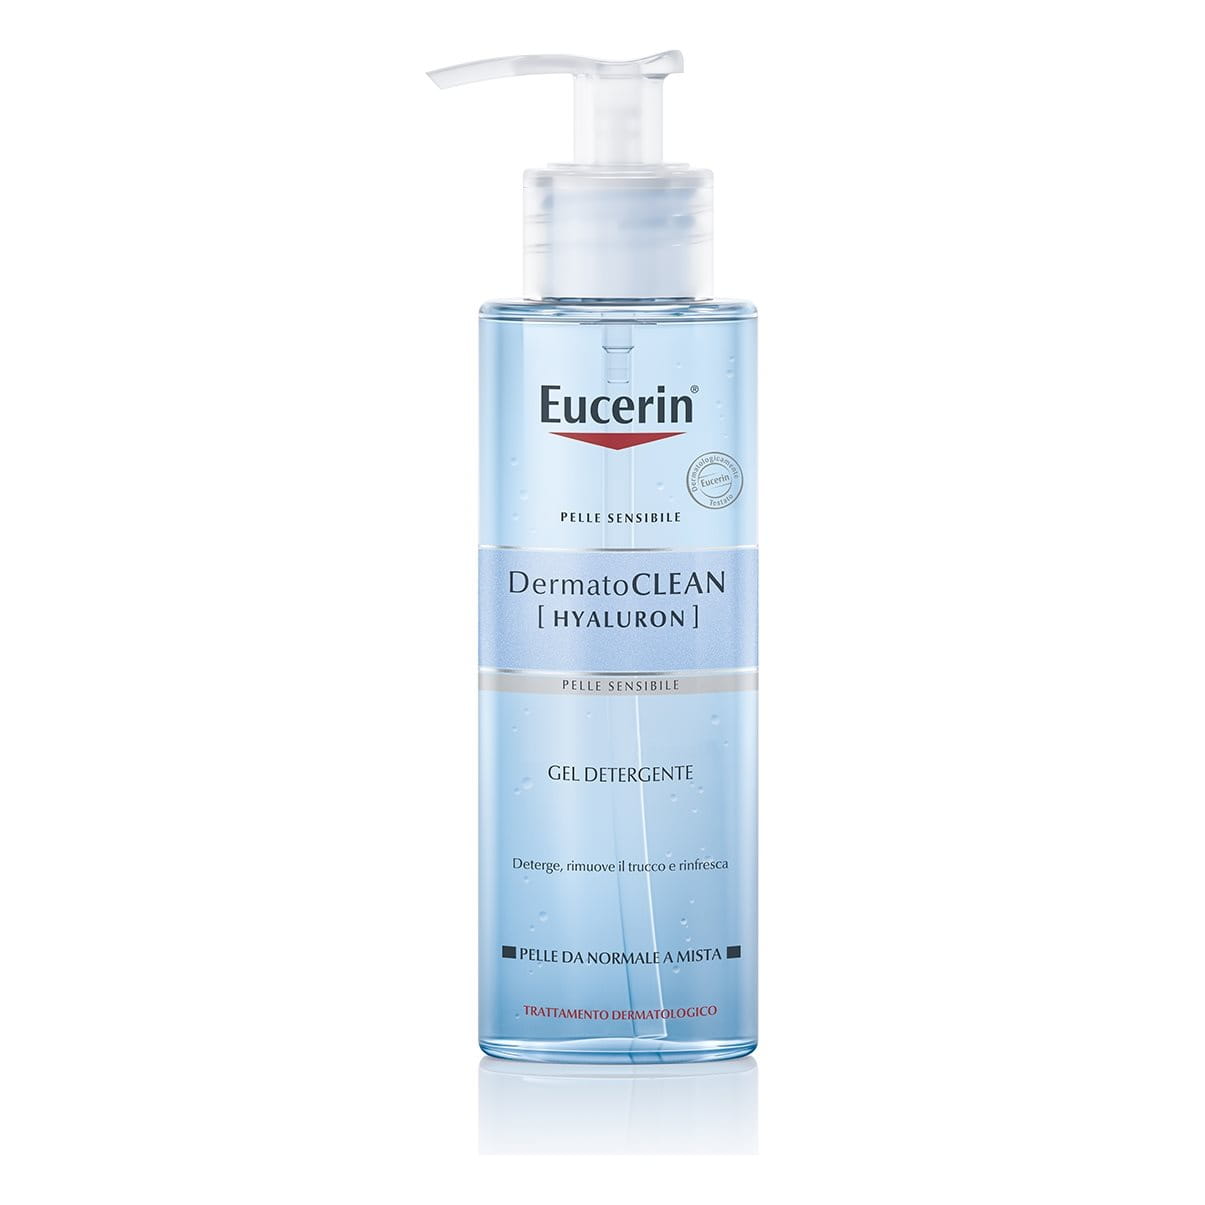 Eucerin DermatoCLEAN [HYALURON] Gel Detergente
